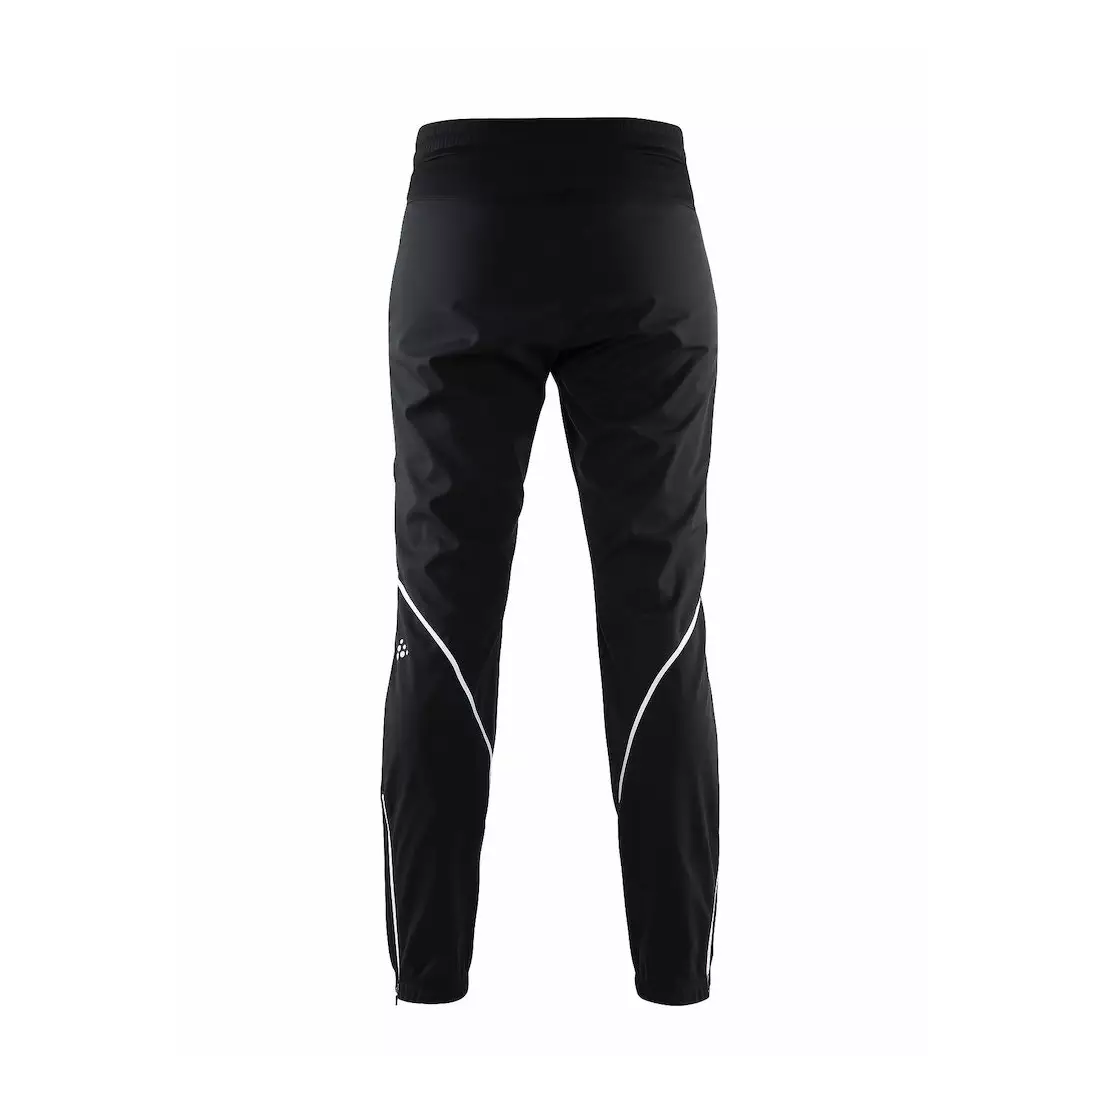 Dámske zateplené športové nohavice CRAFT XC Force Pant 1905249-999900